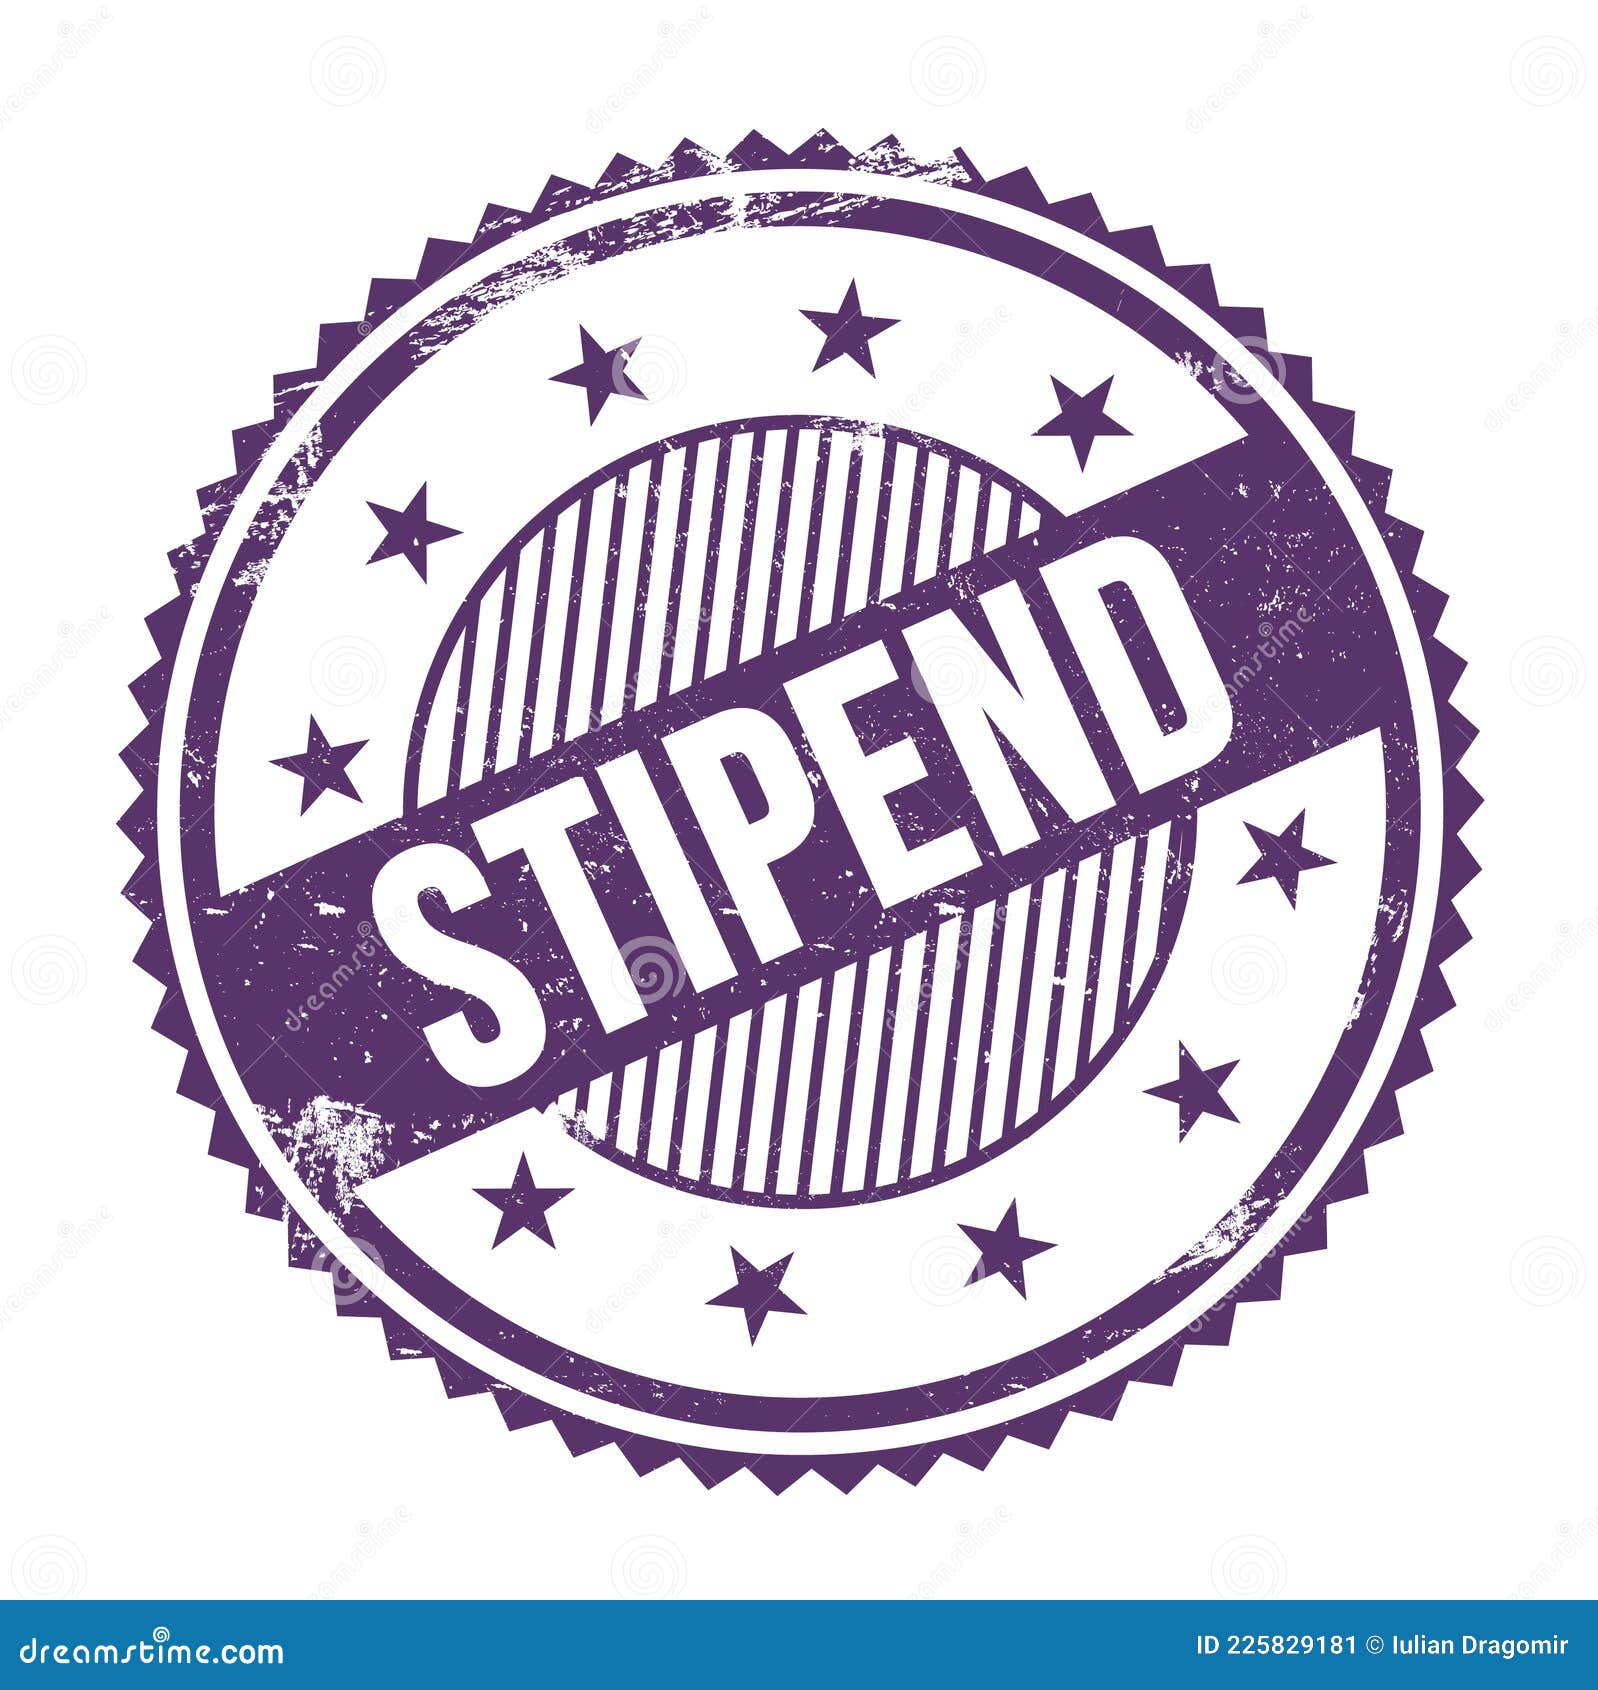 stipend text written on purple indigo grungy round stamp